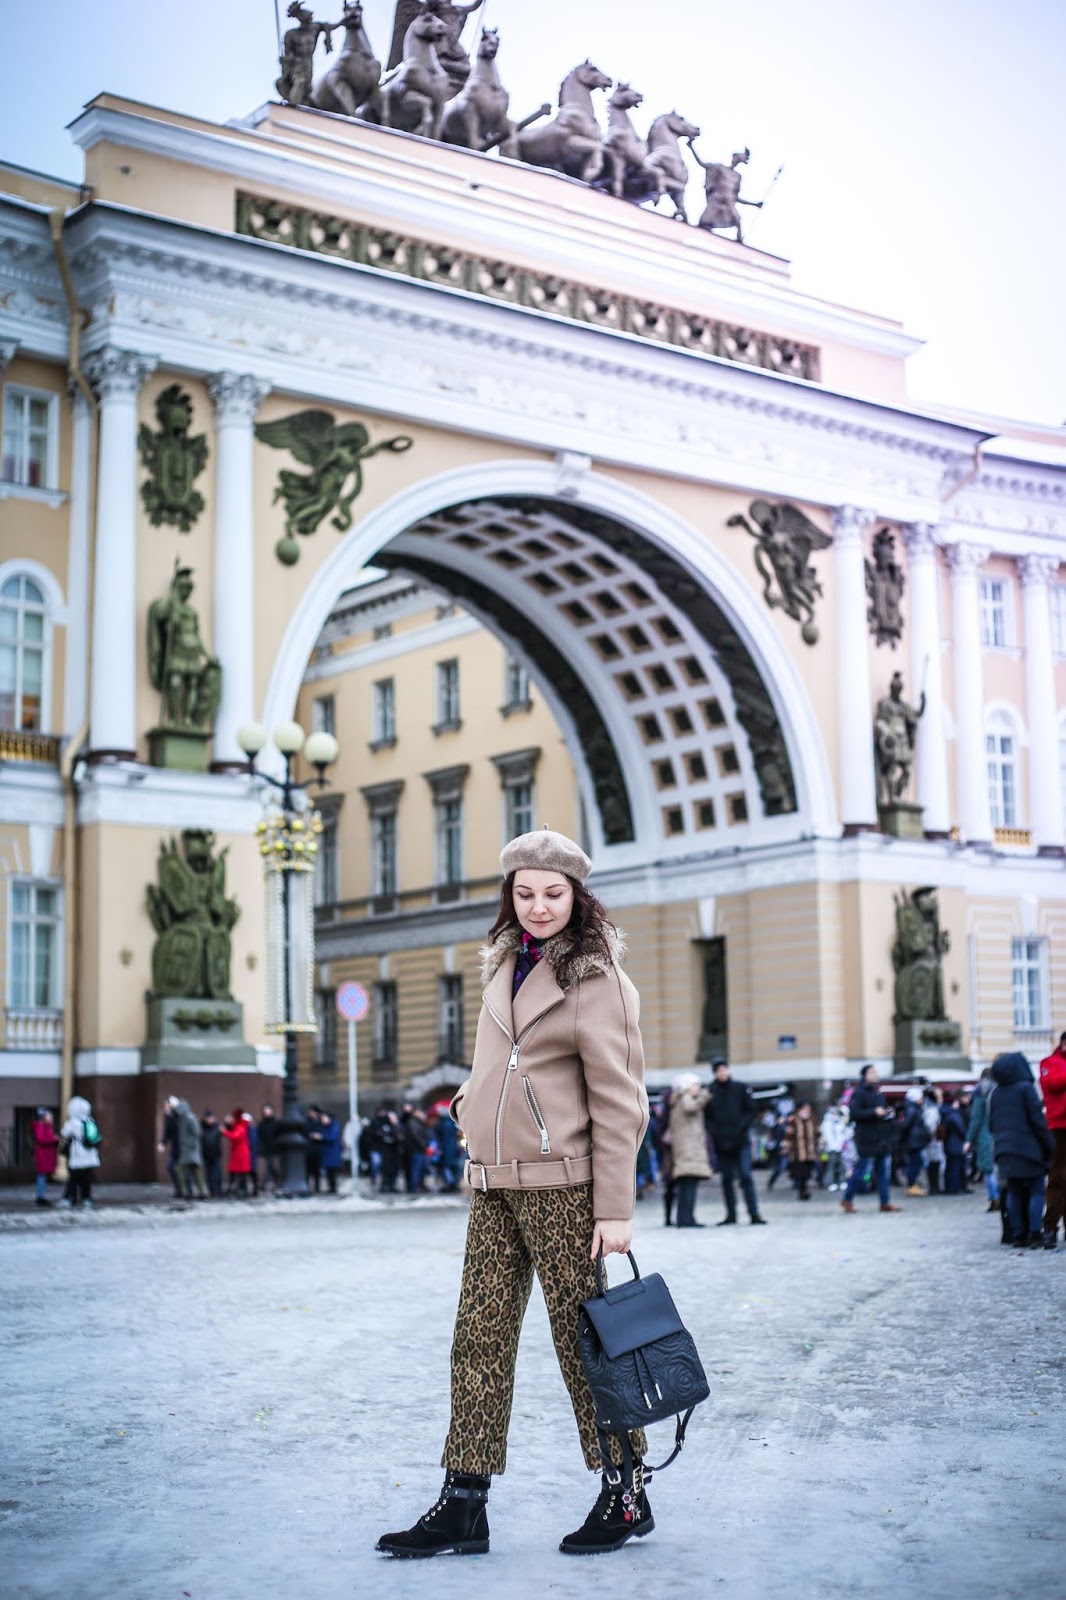 Как одеваться в питере в апреле. Фотосессия по Питеру. Люди в Питере зимой. Образ для фотосессии в Питере. Образ для прогулки по Москве.